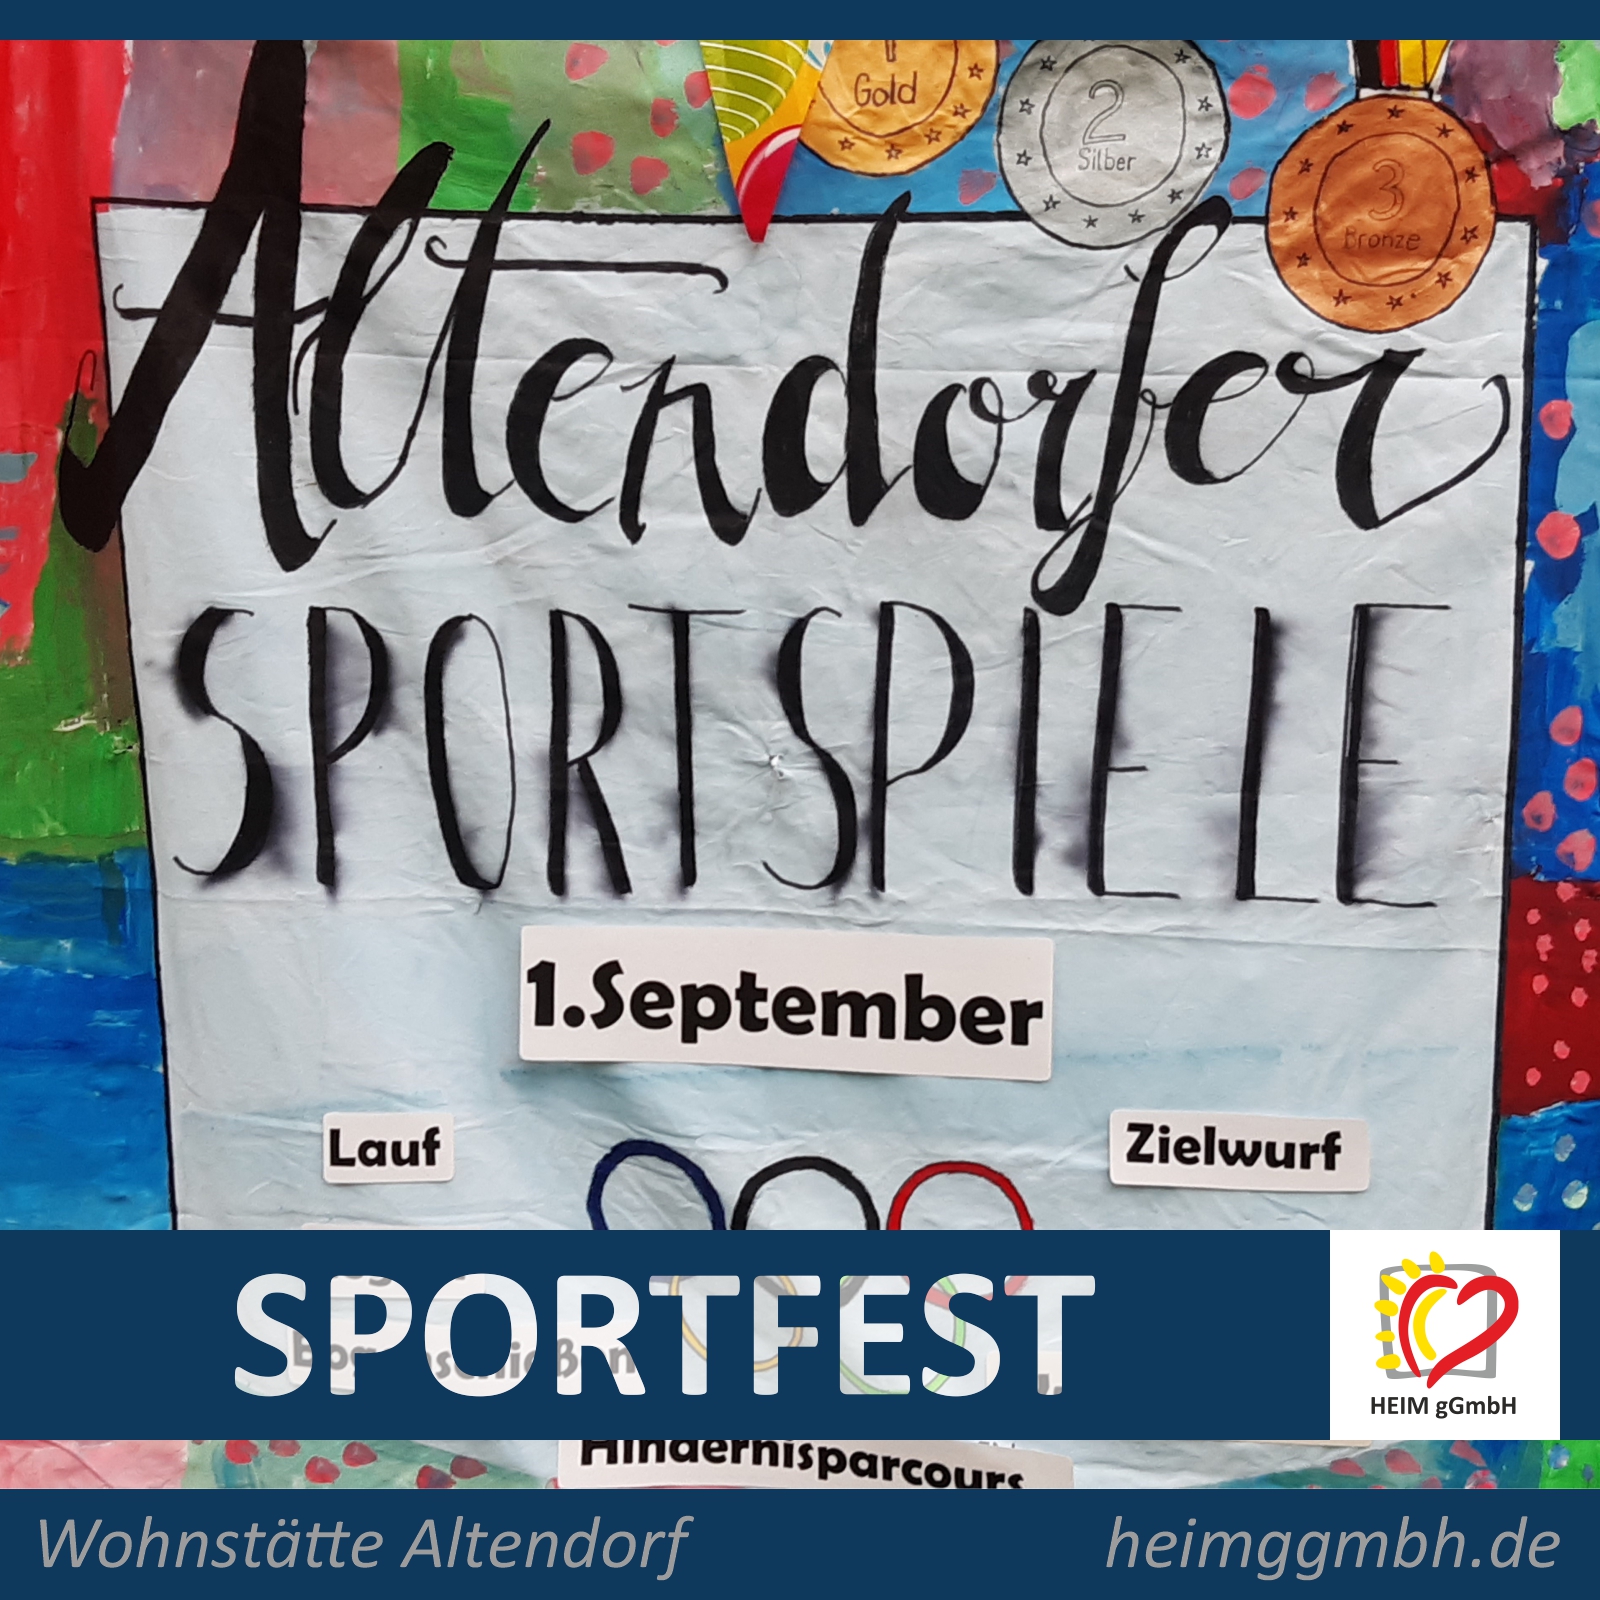 Zur Tradition geworden ist mittlerweile das Altendorfer Sportfest der Heim gemeinnützige GmbH in der Wohnstätte Altendorf.